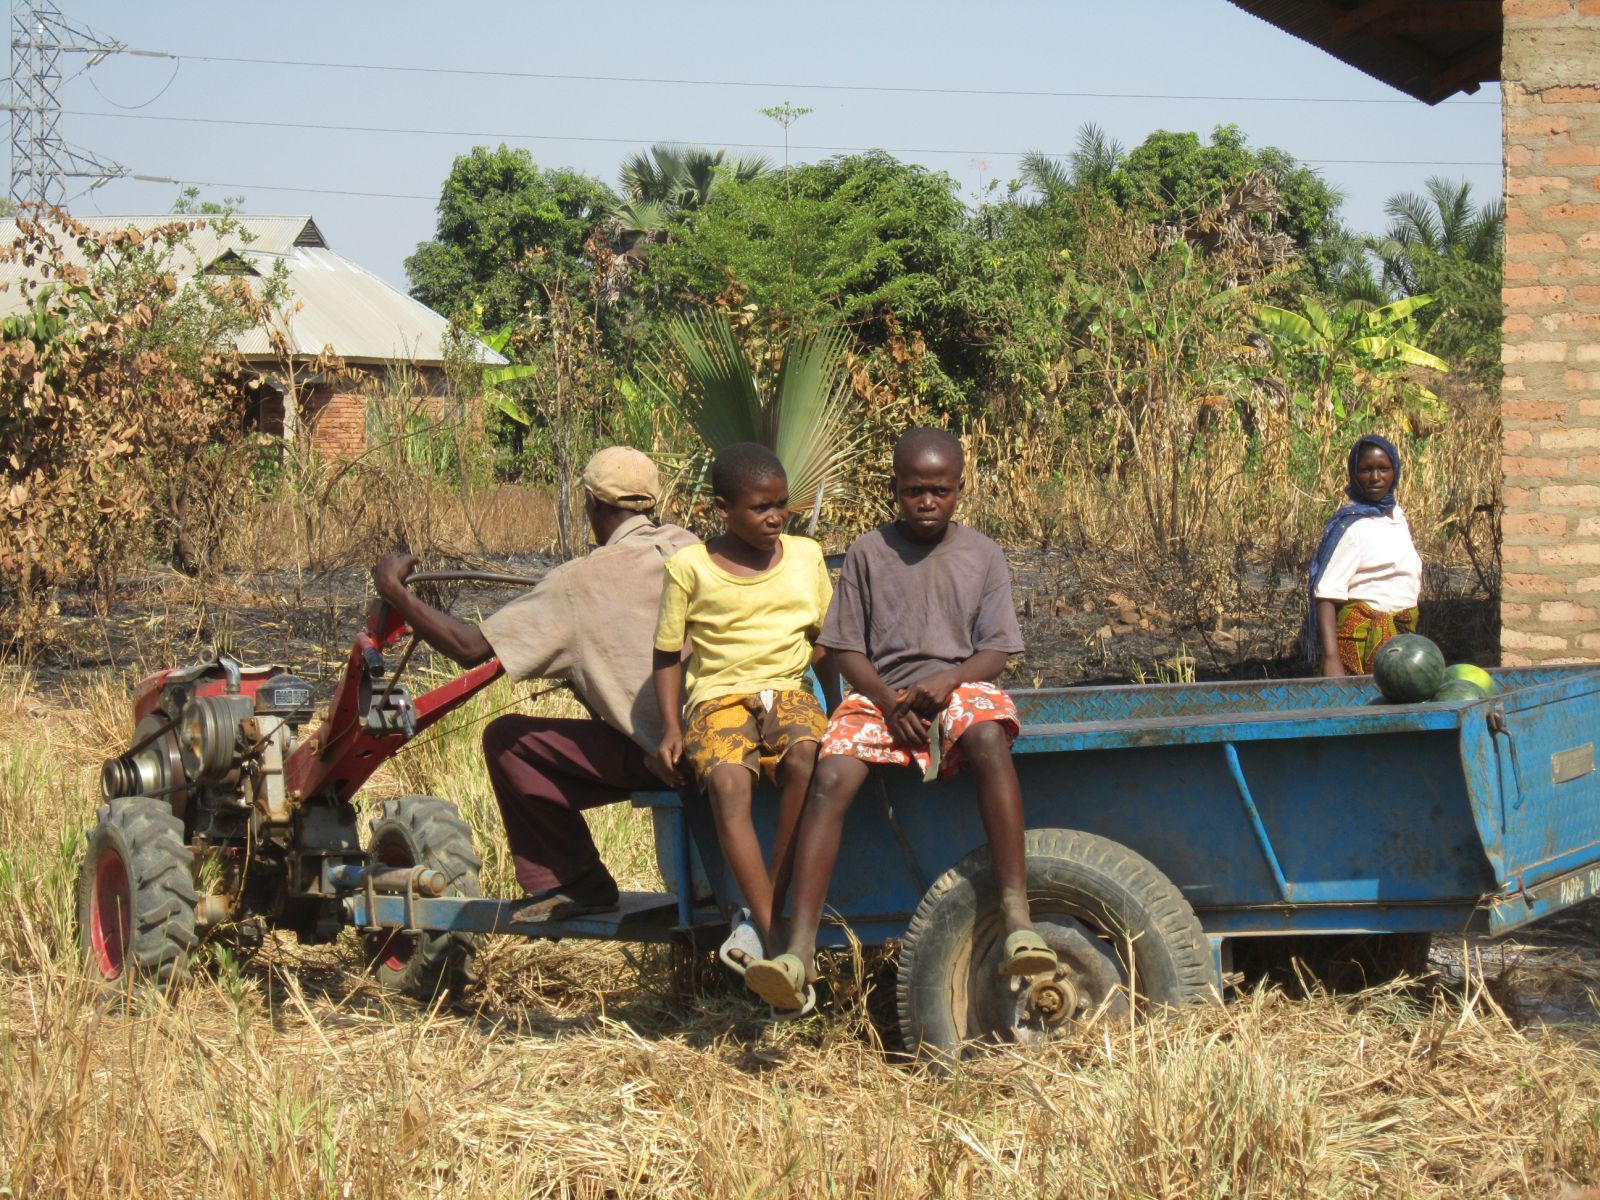 Westliche Messinstrumente erfassen den großen informellen Sektor in Afrika nicht: Wassermelonenanbau in Tansania.